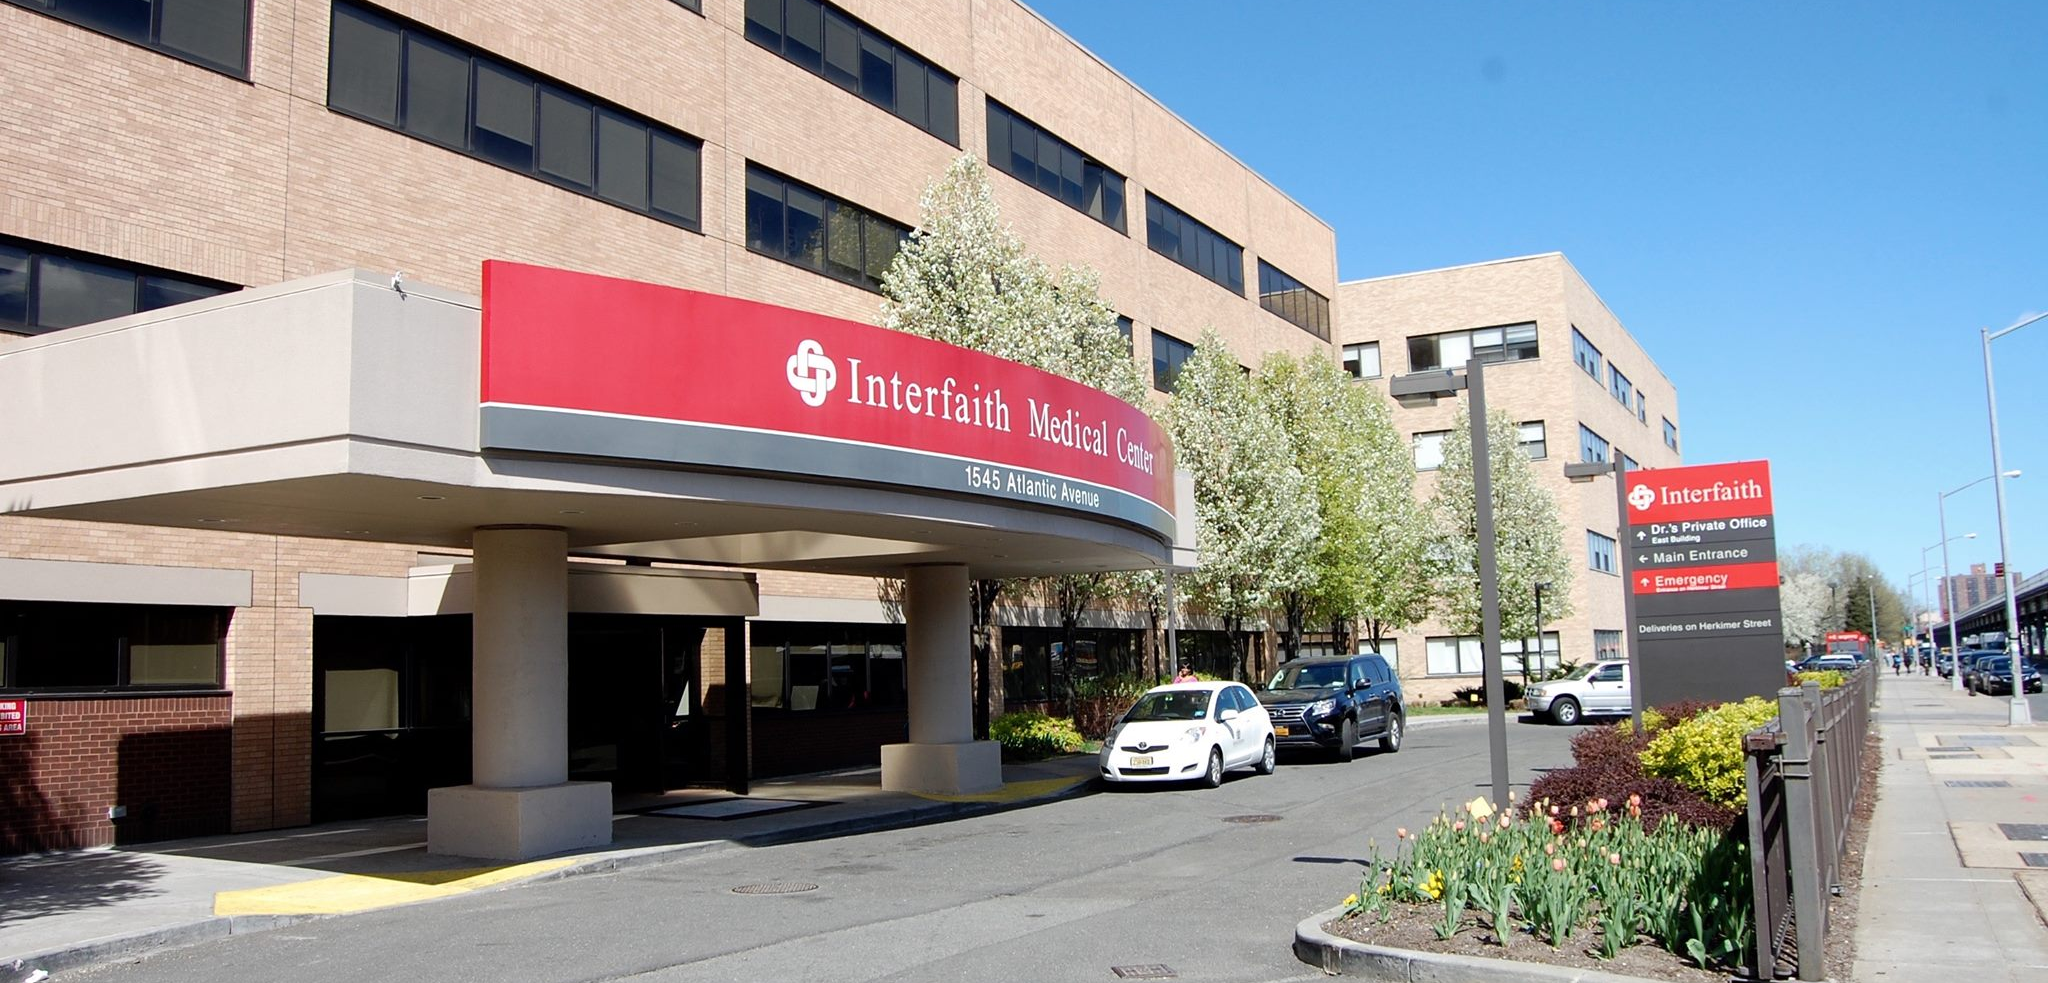 Interfaith Medical Center Inc